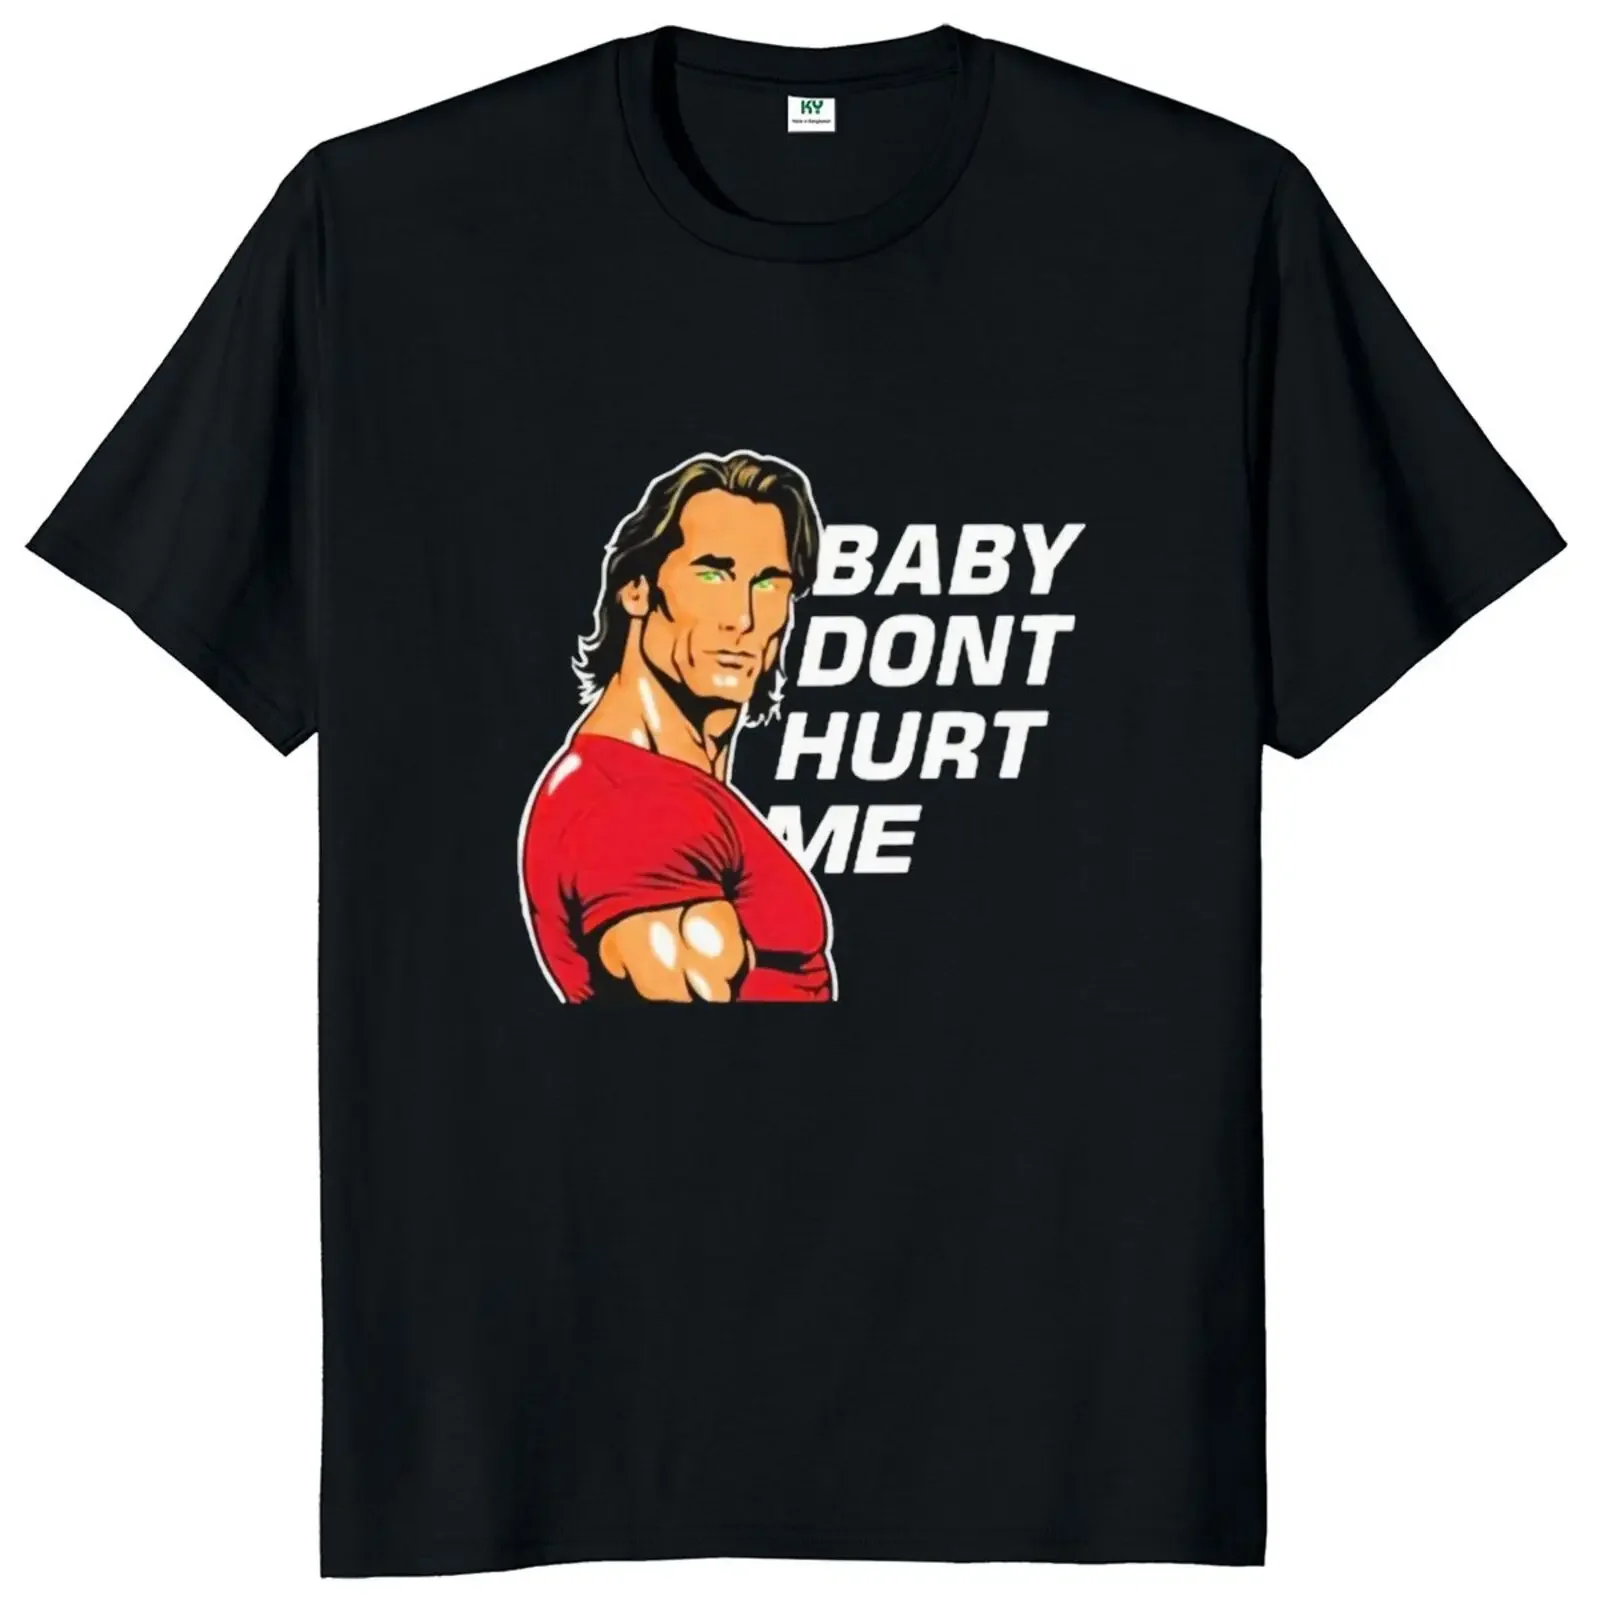 

Футболка детская с надписью «Don't навредить Me», популярная спортивная трендовая футболка для любителей фитнеса, топы, 100% хлопок, повседневные летние футболки унисекс, европейский размер